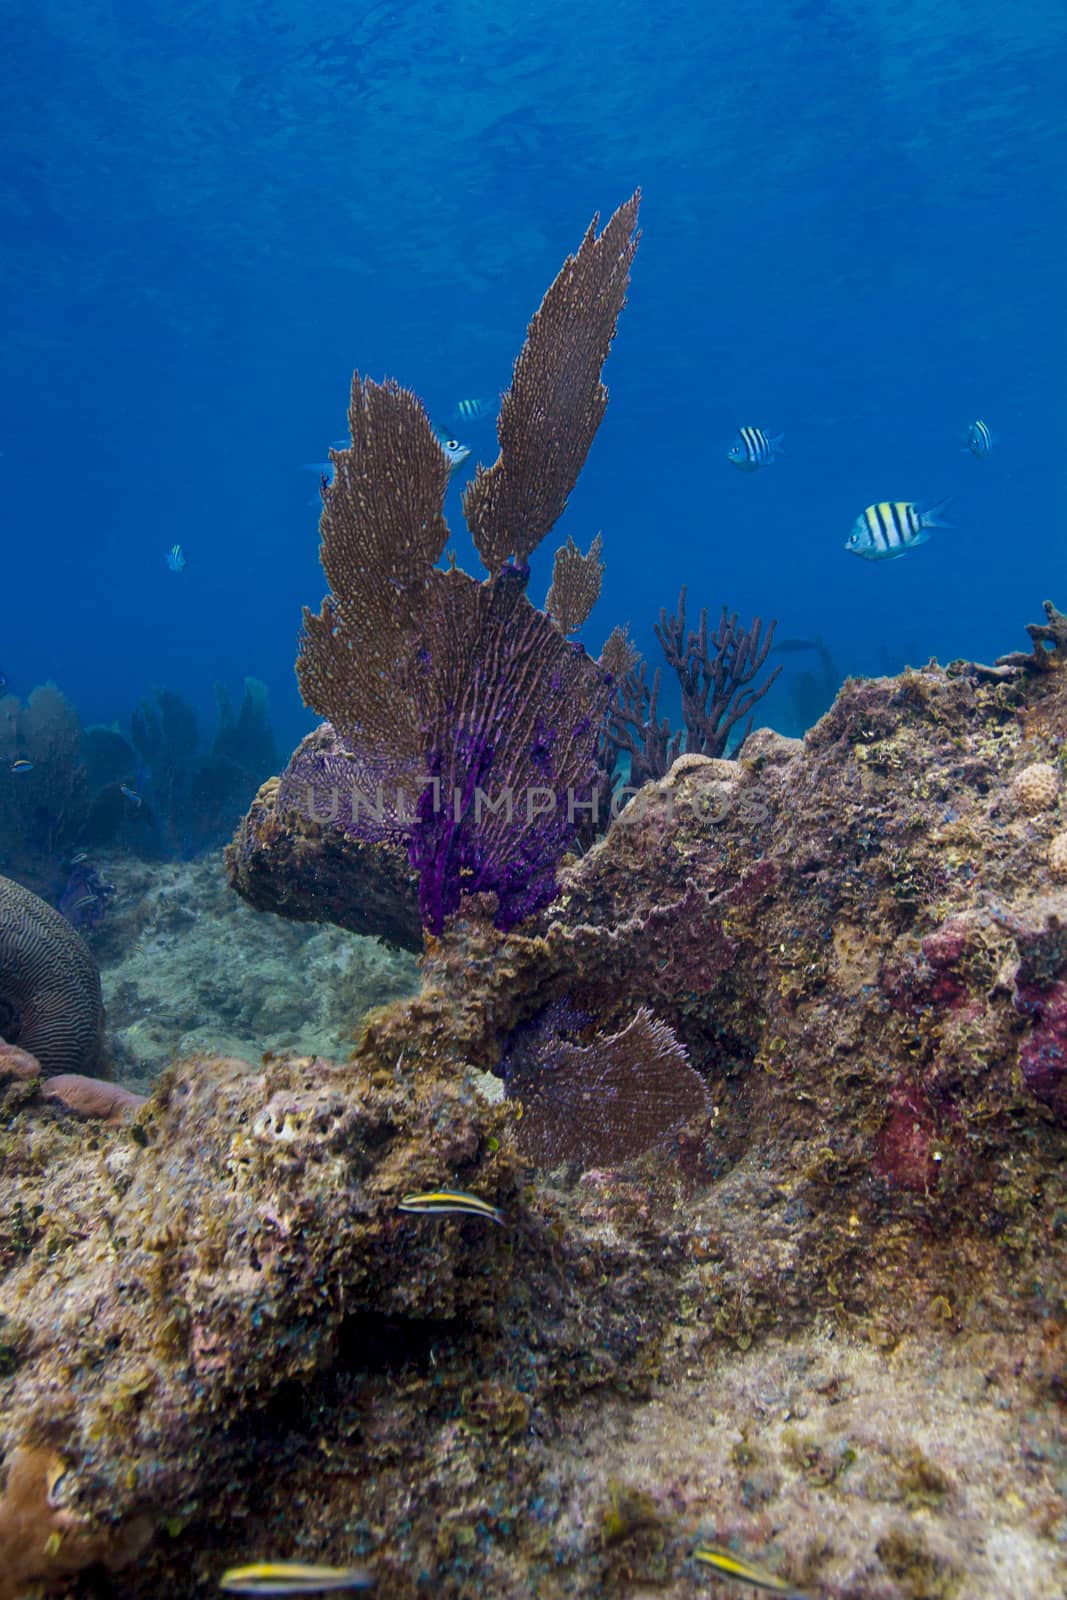 Coral fan in a reef by mypstudio